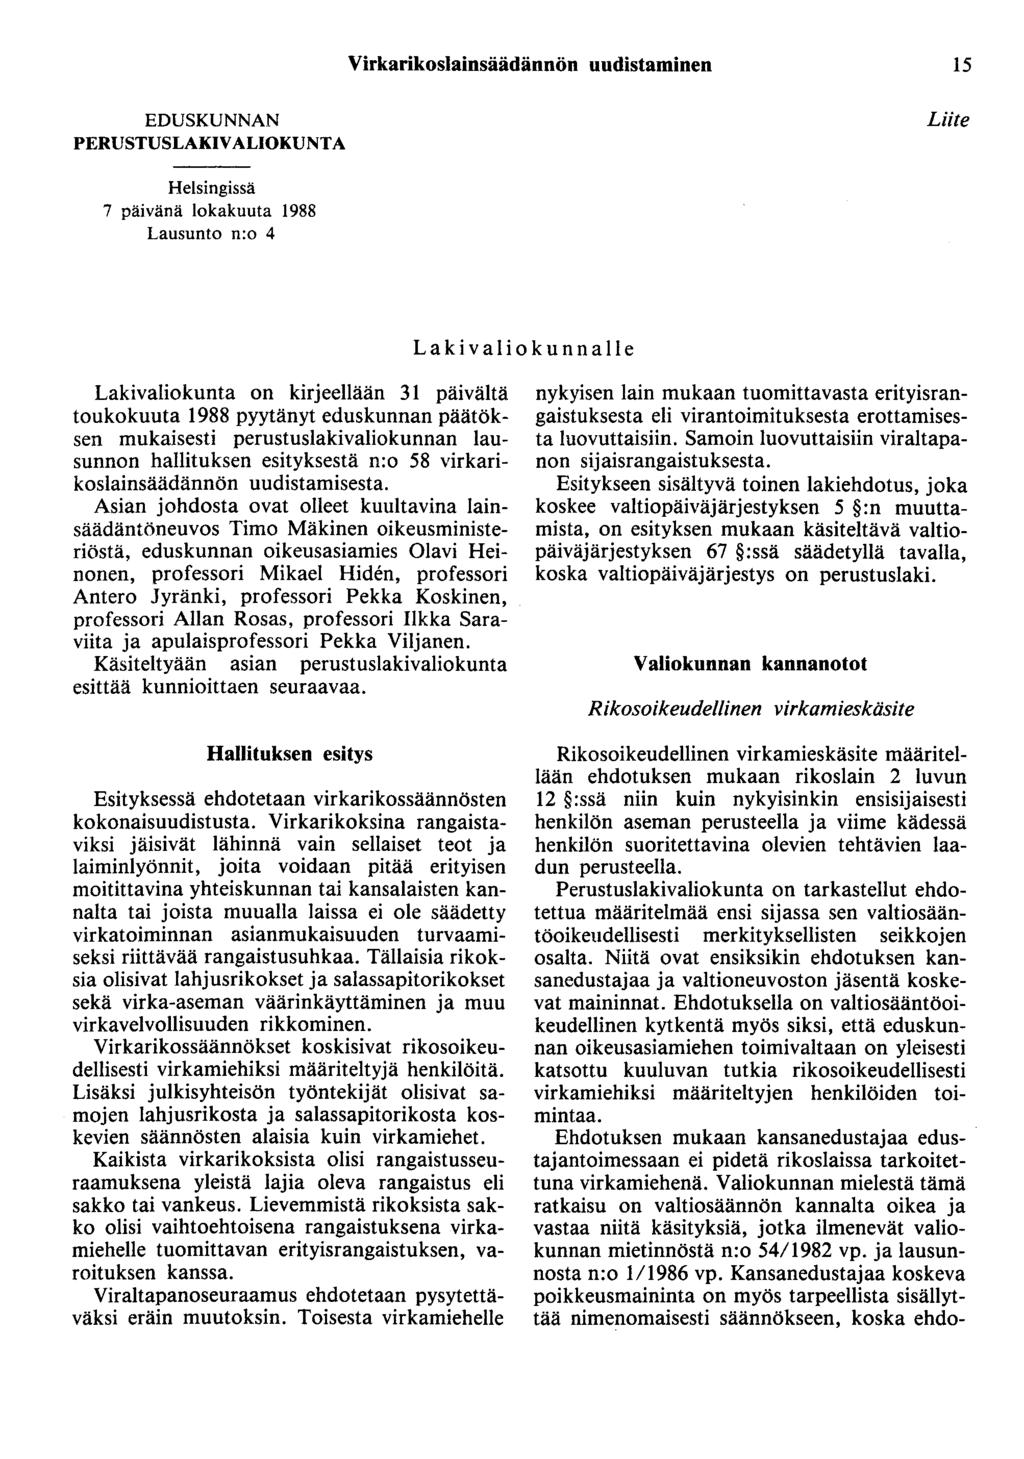 Virkarikoslainsäädännön uudistaminen 15 EDUSKUNNAN PERUSTUSLAKIVALIOKUNTA Liite Helsingissä 7 päivänä lokakuuta 1988 Lausunto n:o 4 Lakivaliokunnalle Lakivaliokunta on kirjeellään 31 päivältä